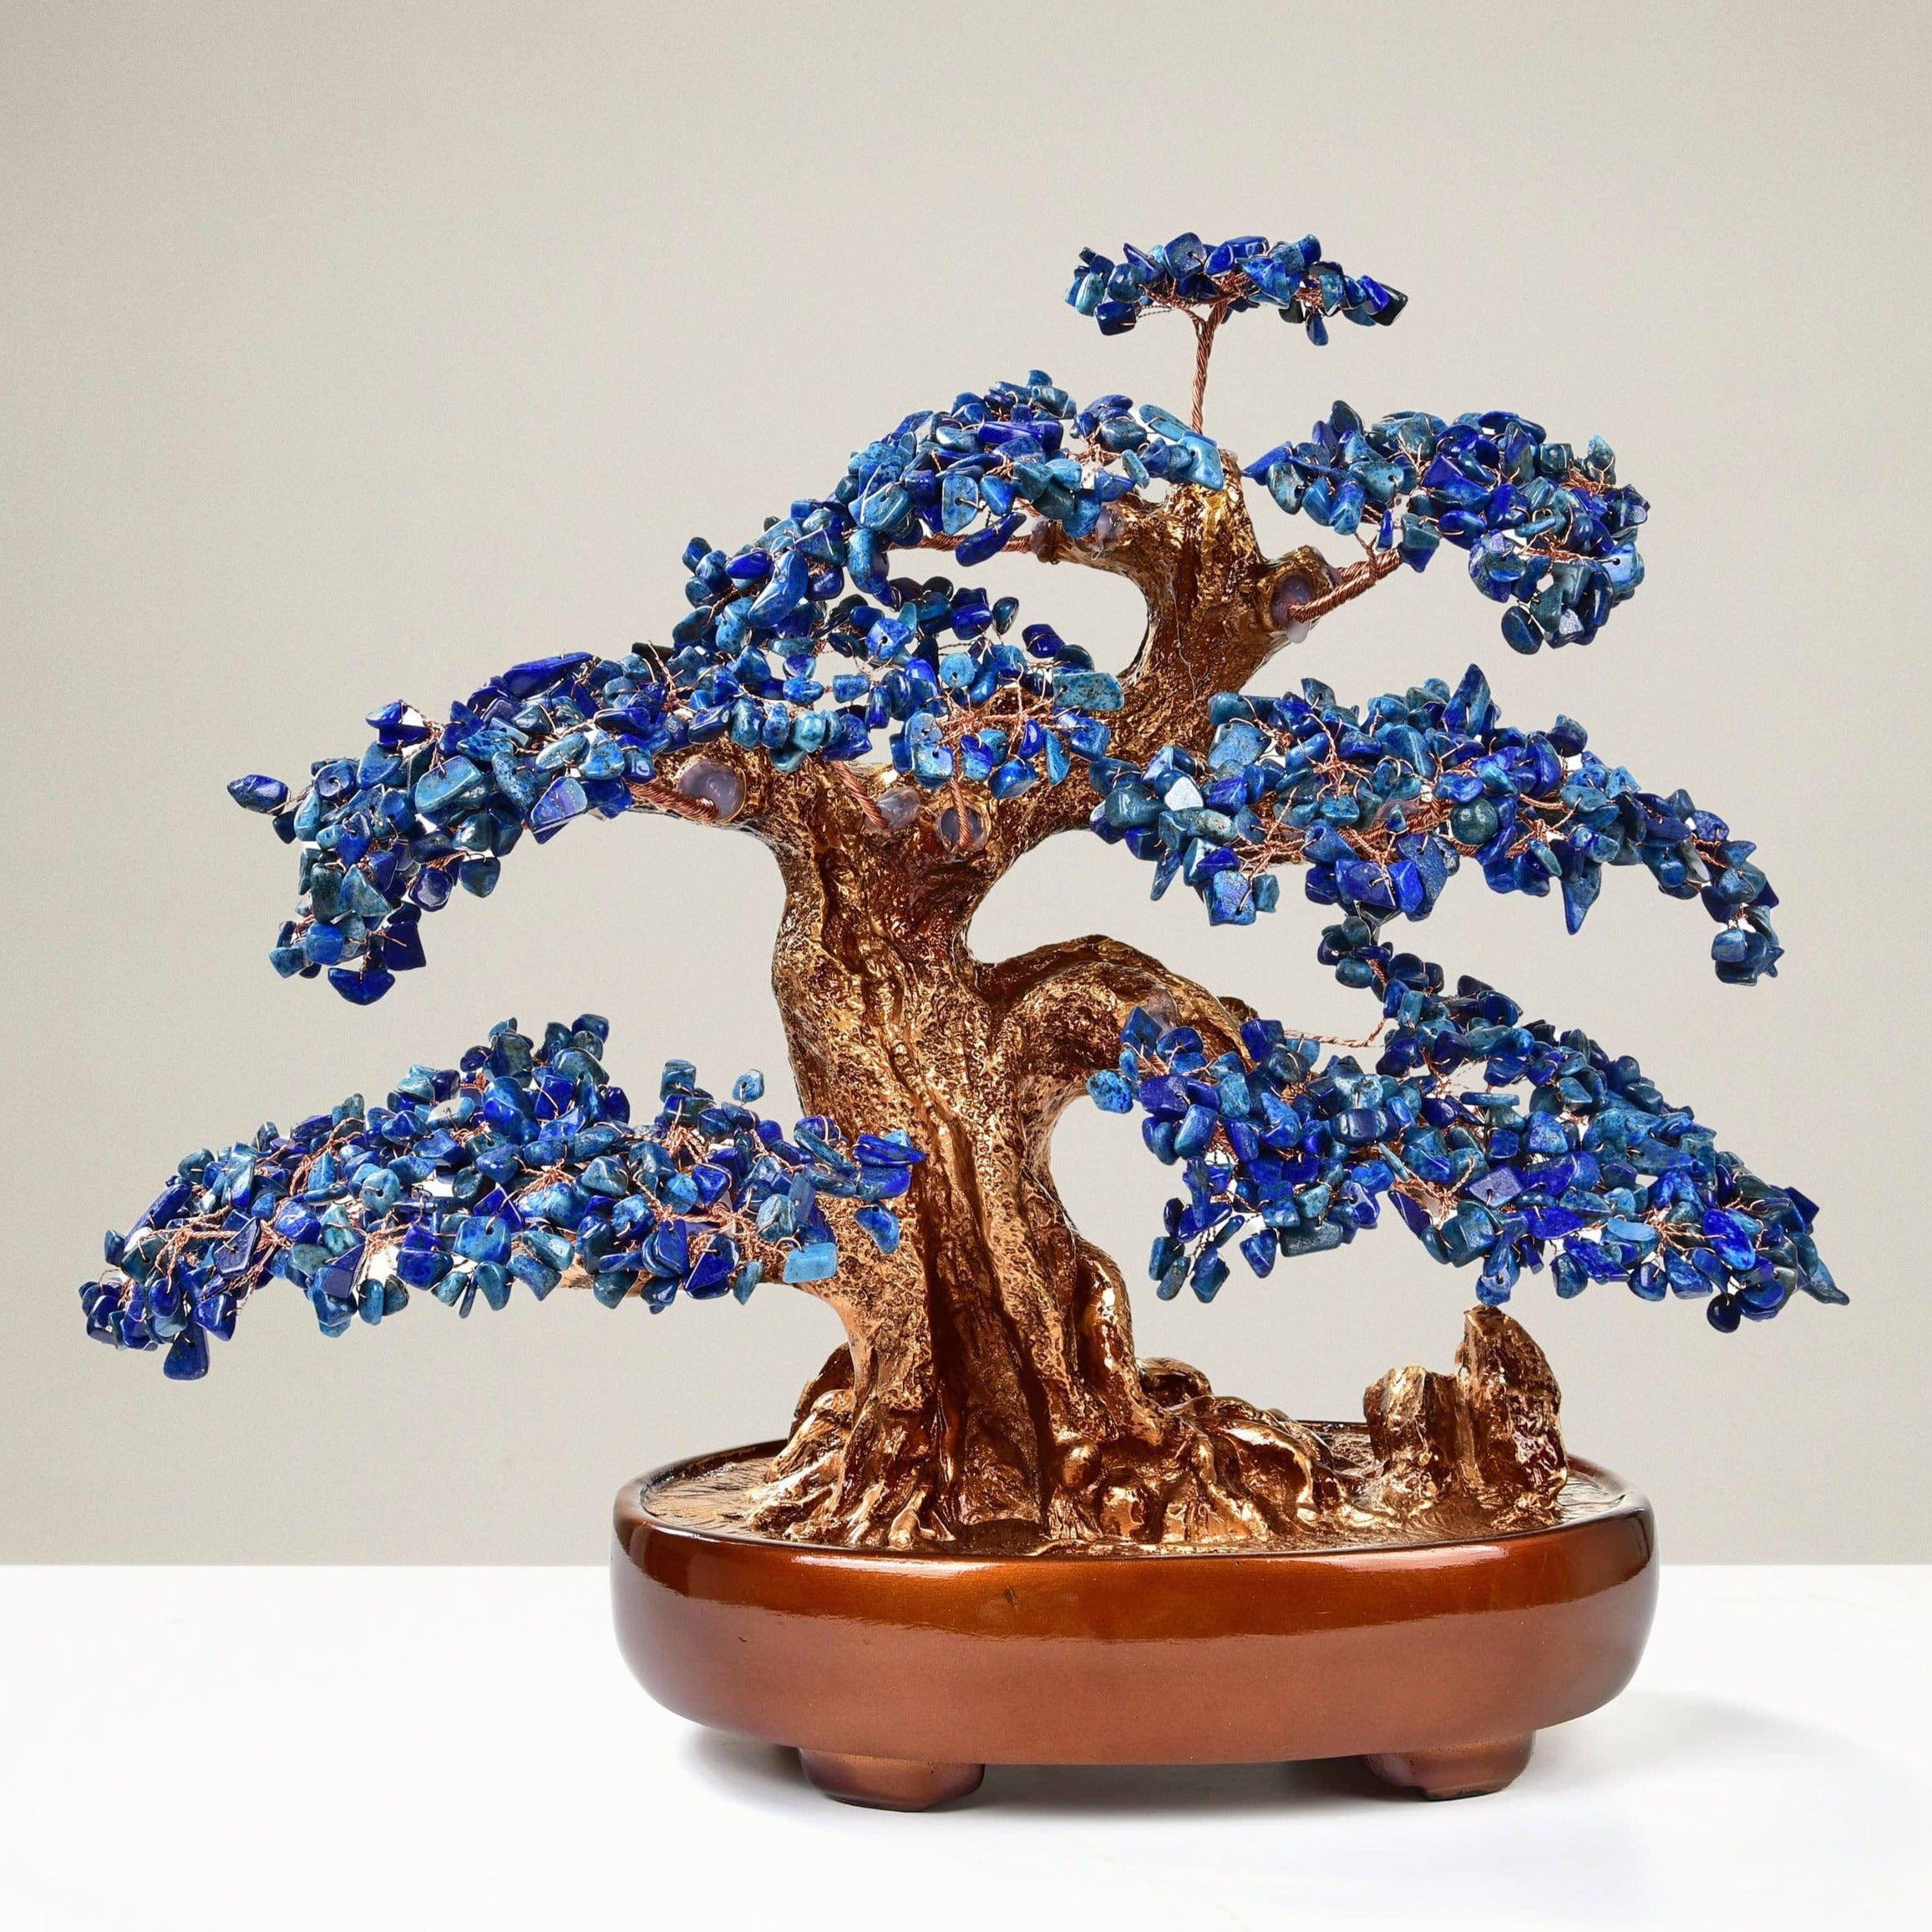 Kalifano Gemstone Trees Lapis Bonsai Tree of Life with 1,251 Natural Gemstones K9150N-LP